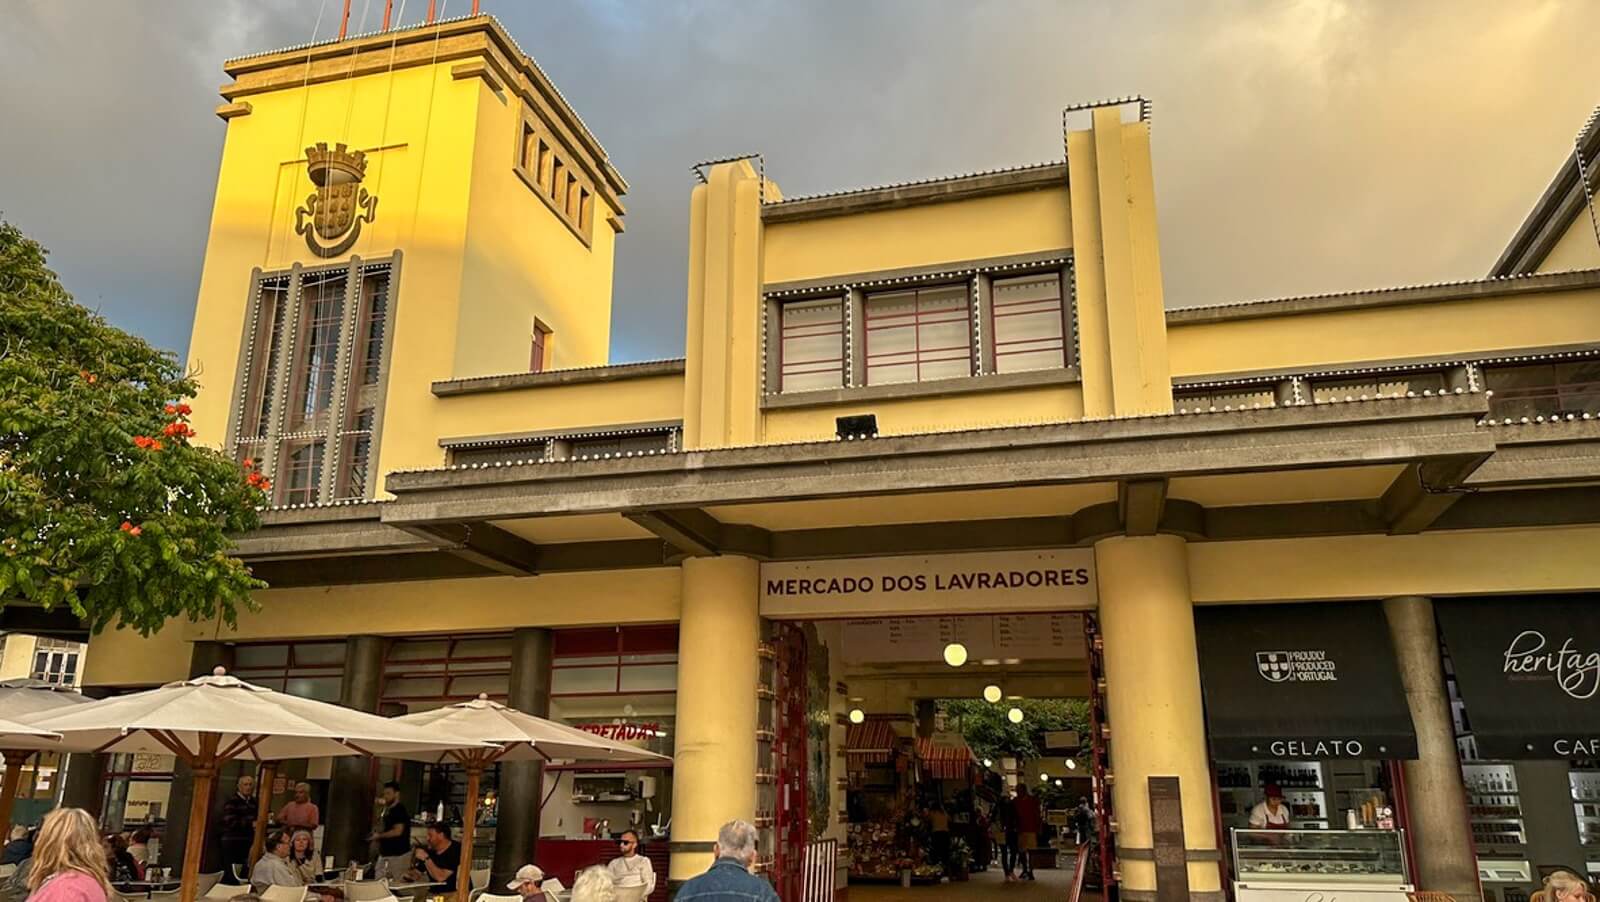 The True Flavours & Natural Beauty of Madeira Islands - Mercado dos Lavaradores, farmers market